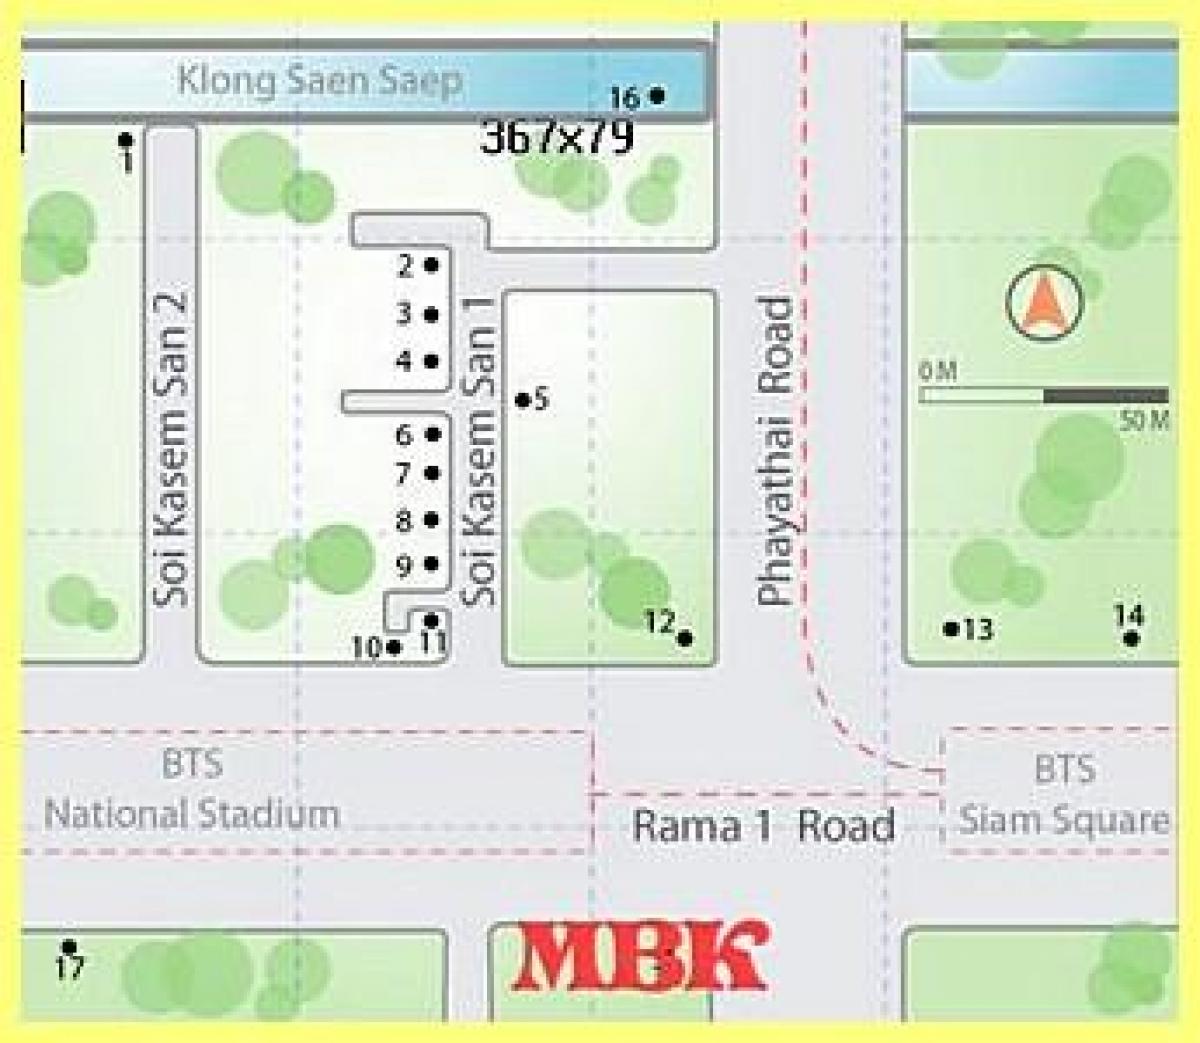 торговый центр mbk в Бангкоке карте